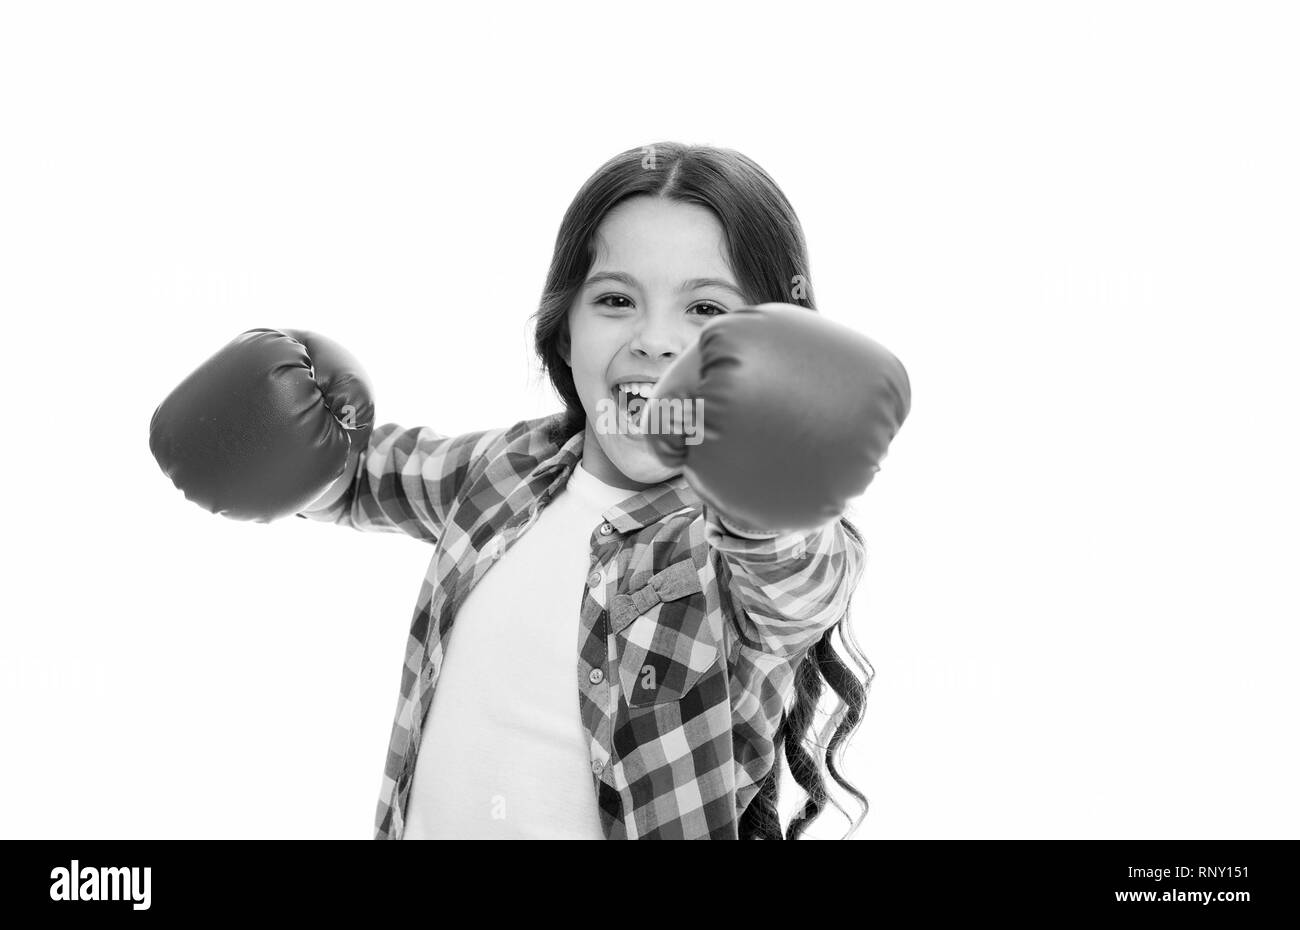 Girl Power und Feminismus Konzept. Glückliches Kind Boxen in Handschuhe isoliert auf Weiss. Kind Boxer mit langen Haaren Boxen für Spaß. Sport und Spaß in der Freizeit. Boxing Geschicklichkeit üben. Feministische Erziehung. Stockfoto